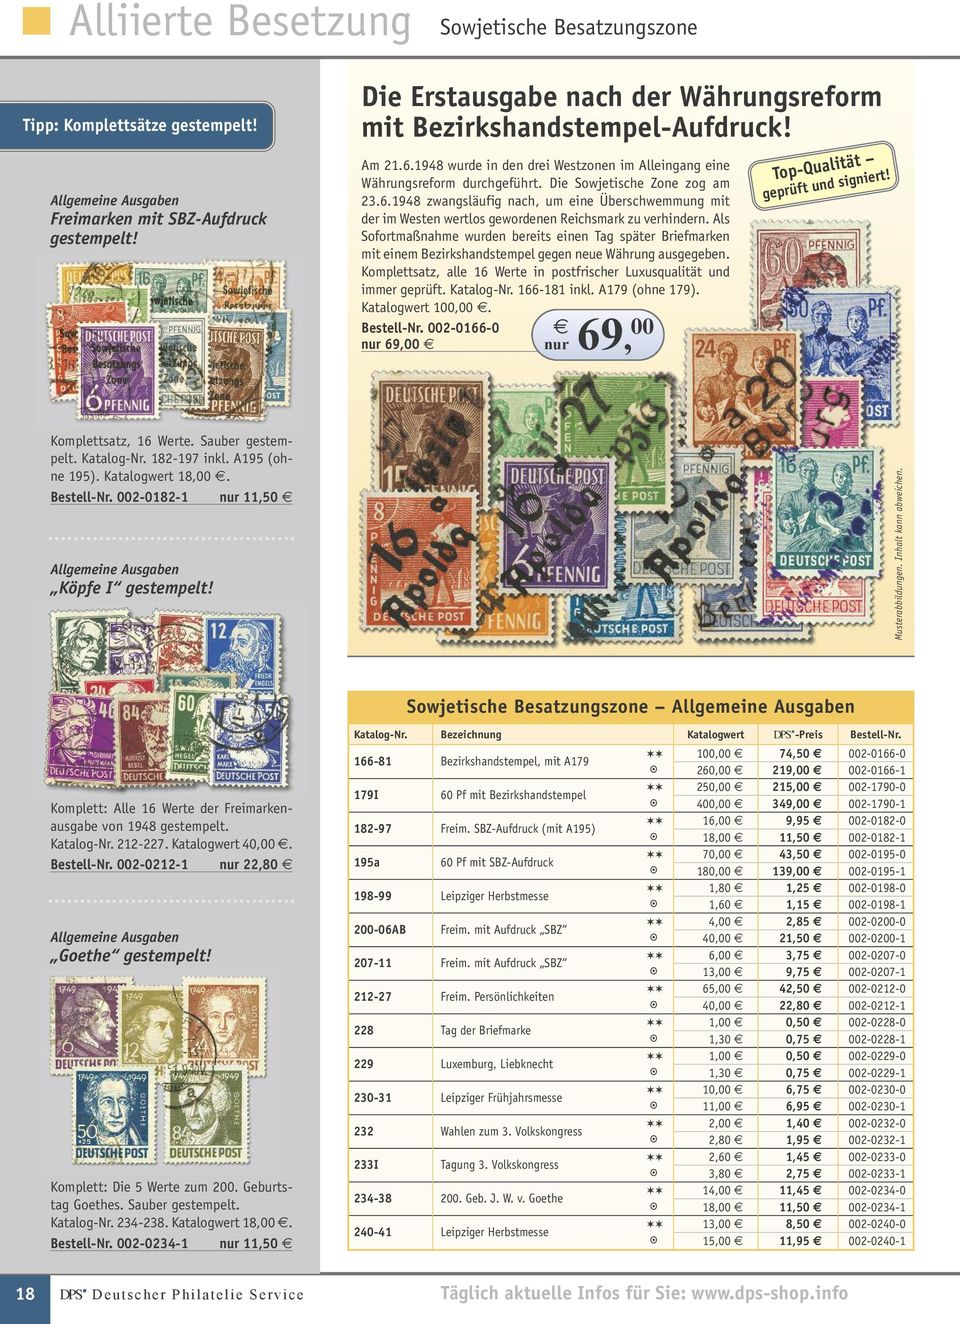 Als Sofortmaßnahme wurden bereits einen Tag später Briefmarken mit einem Bezirkshandstempel gegen neue Währung ausgegeben